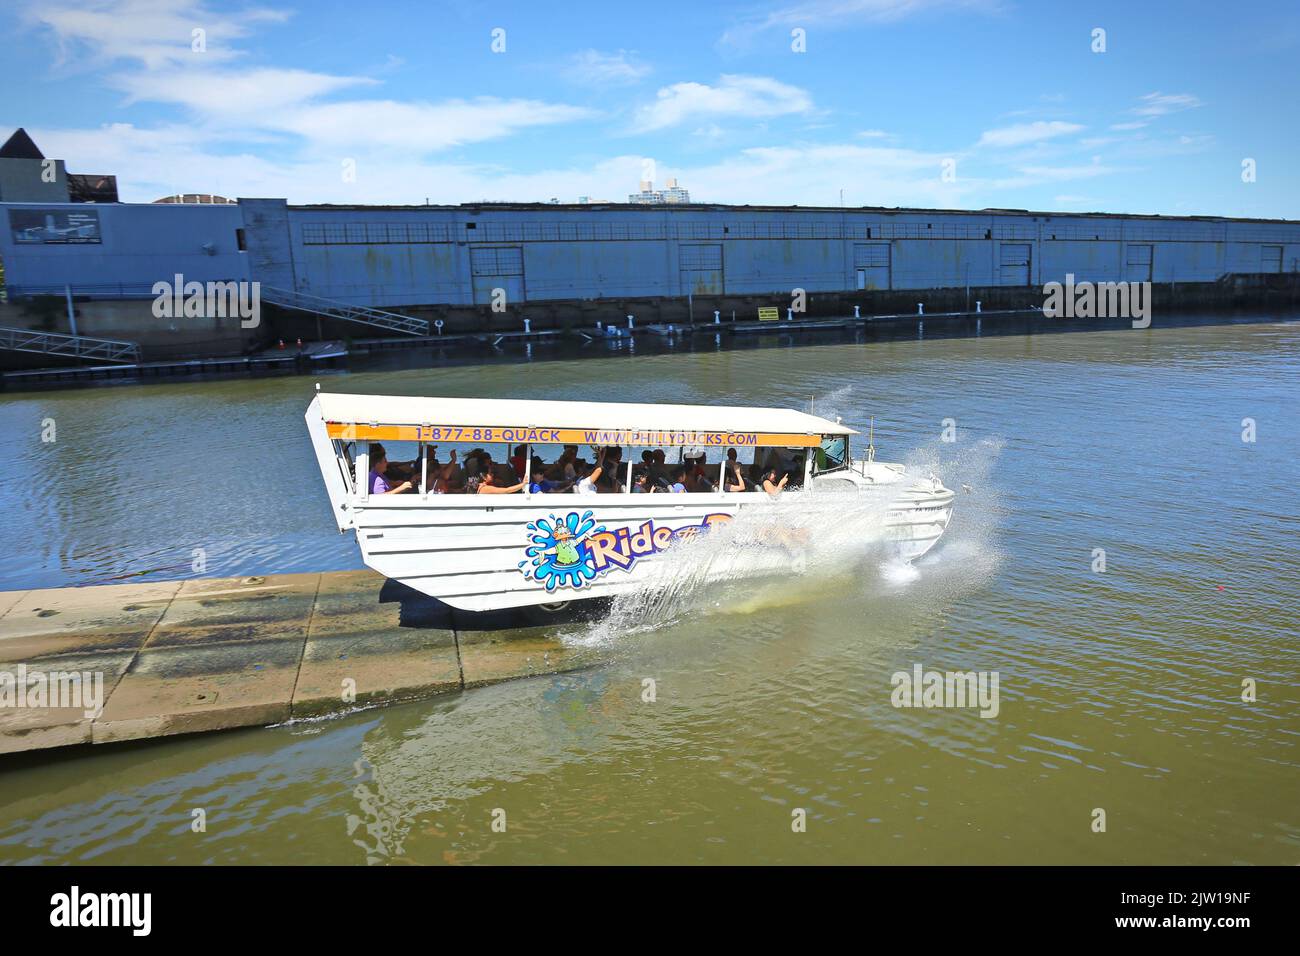 Prenez le bateau touristique Duck sur la rivière de Philadelphie. Philadelphie, Pennsylvanie, États-Unis - août 2019. Banque D'Images